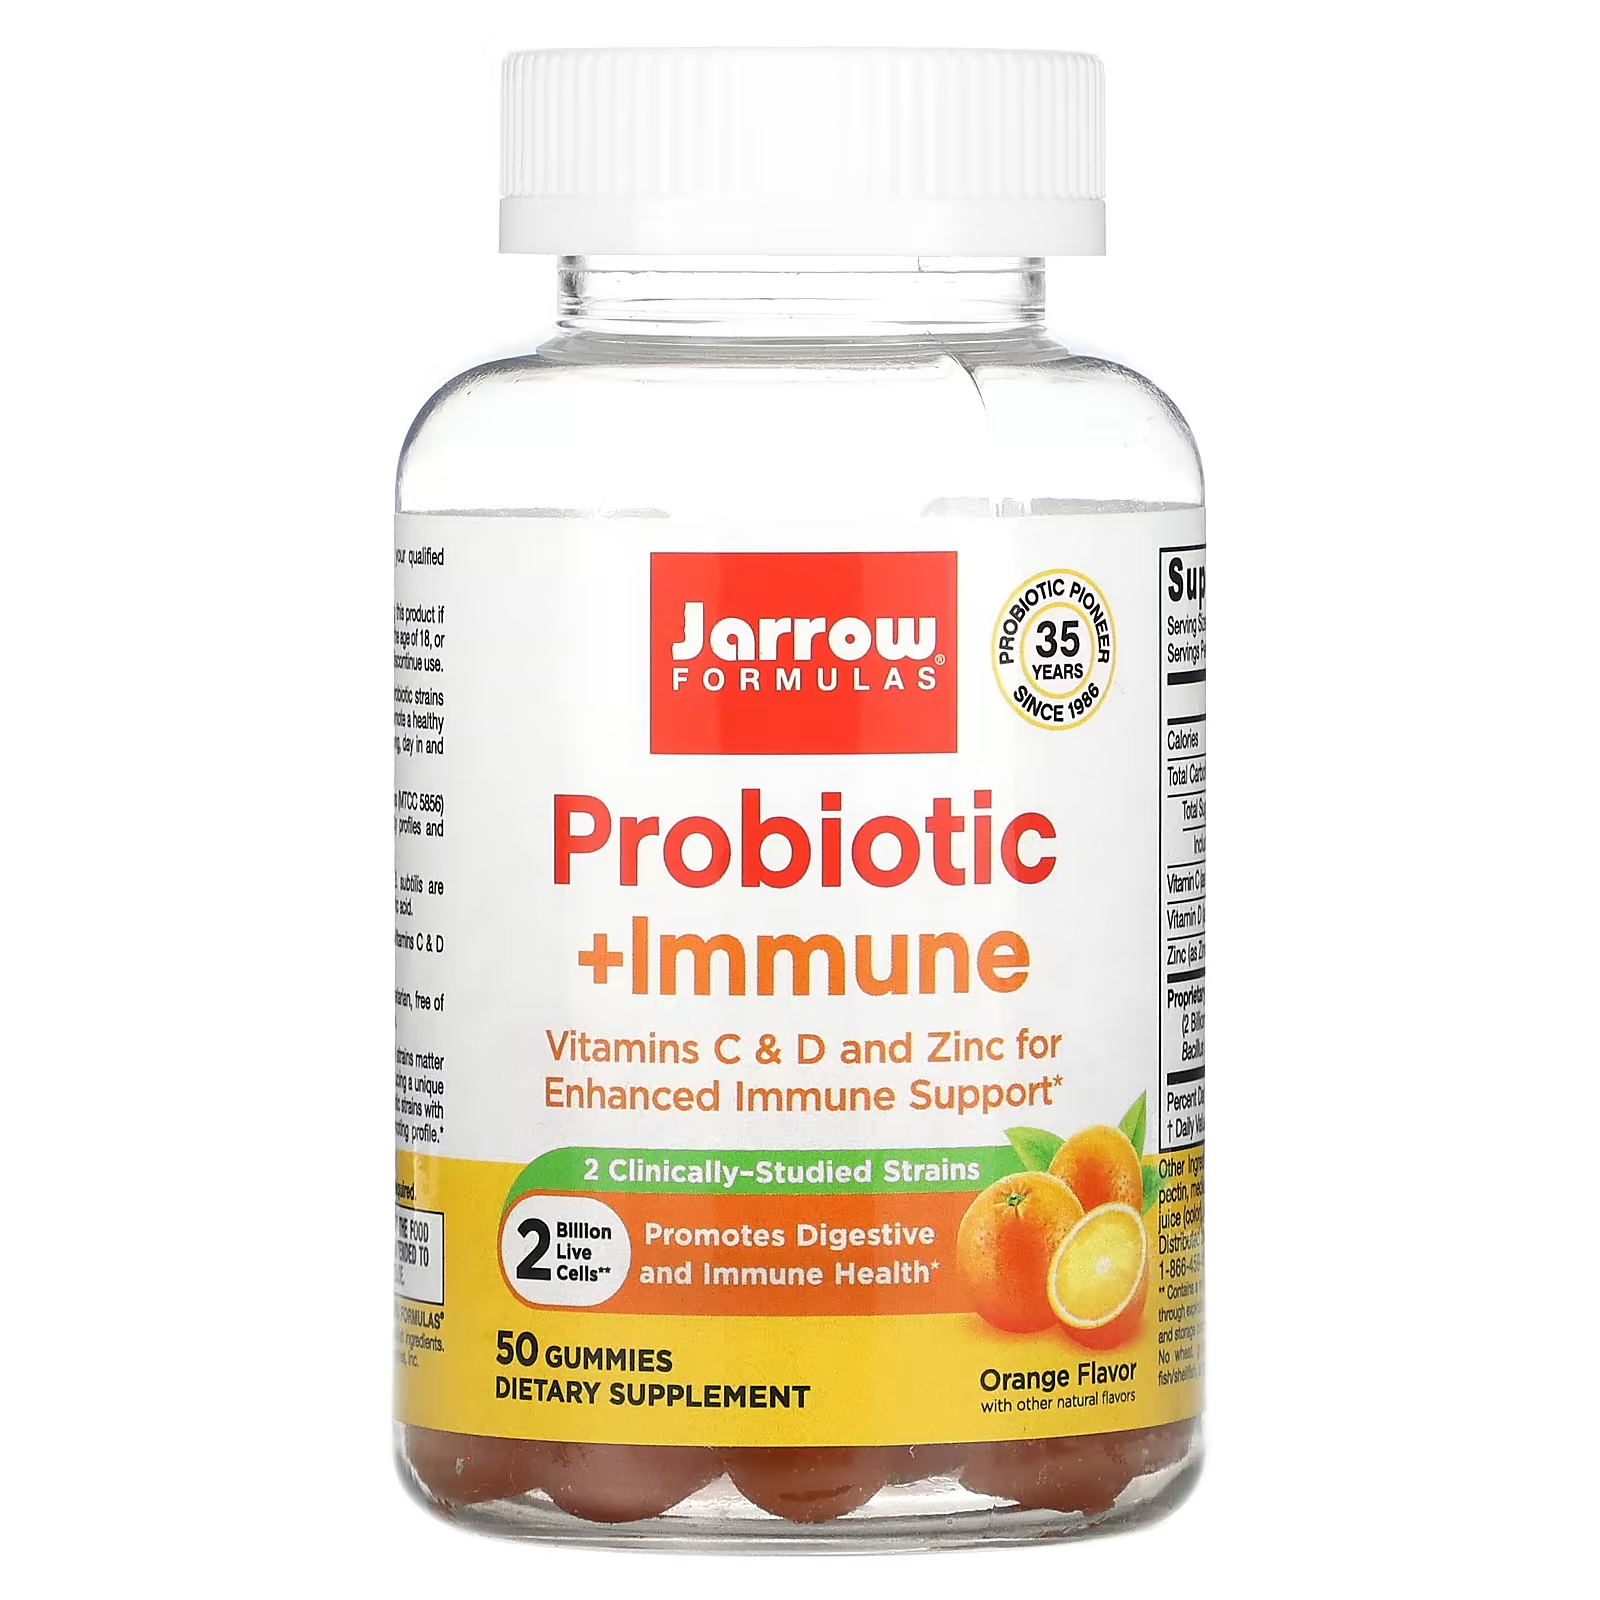 Пищевая добавка Jarrow Formulas Пробиотик + иммунитет апельсин, 50 жевательных таблеток jarrow formulas probiotic immune апельсин 2 млрд 60 жевательных таблеток